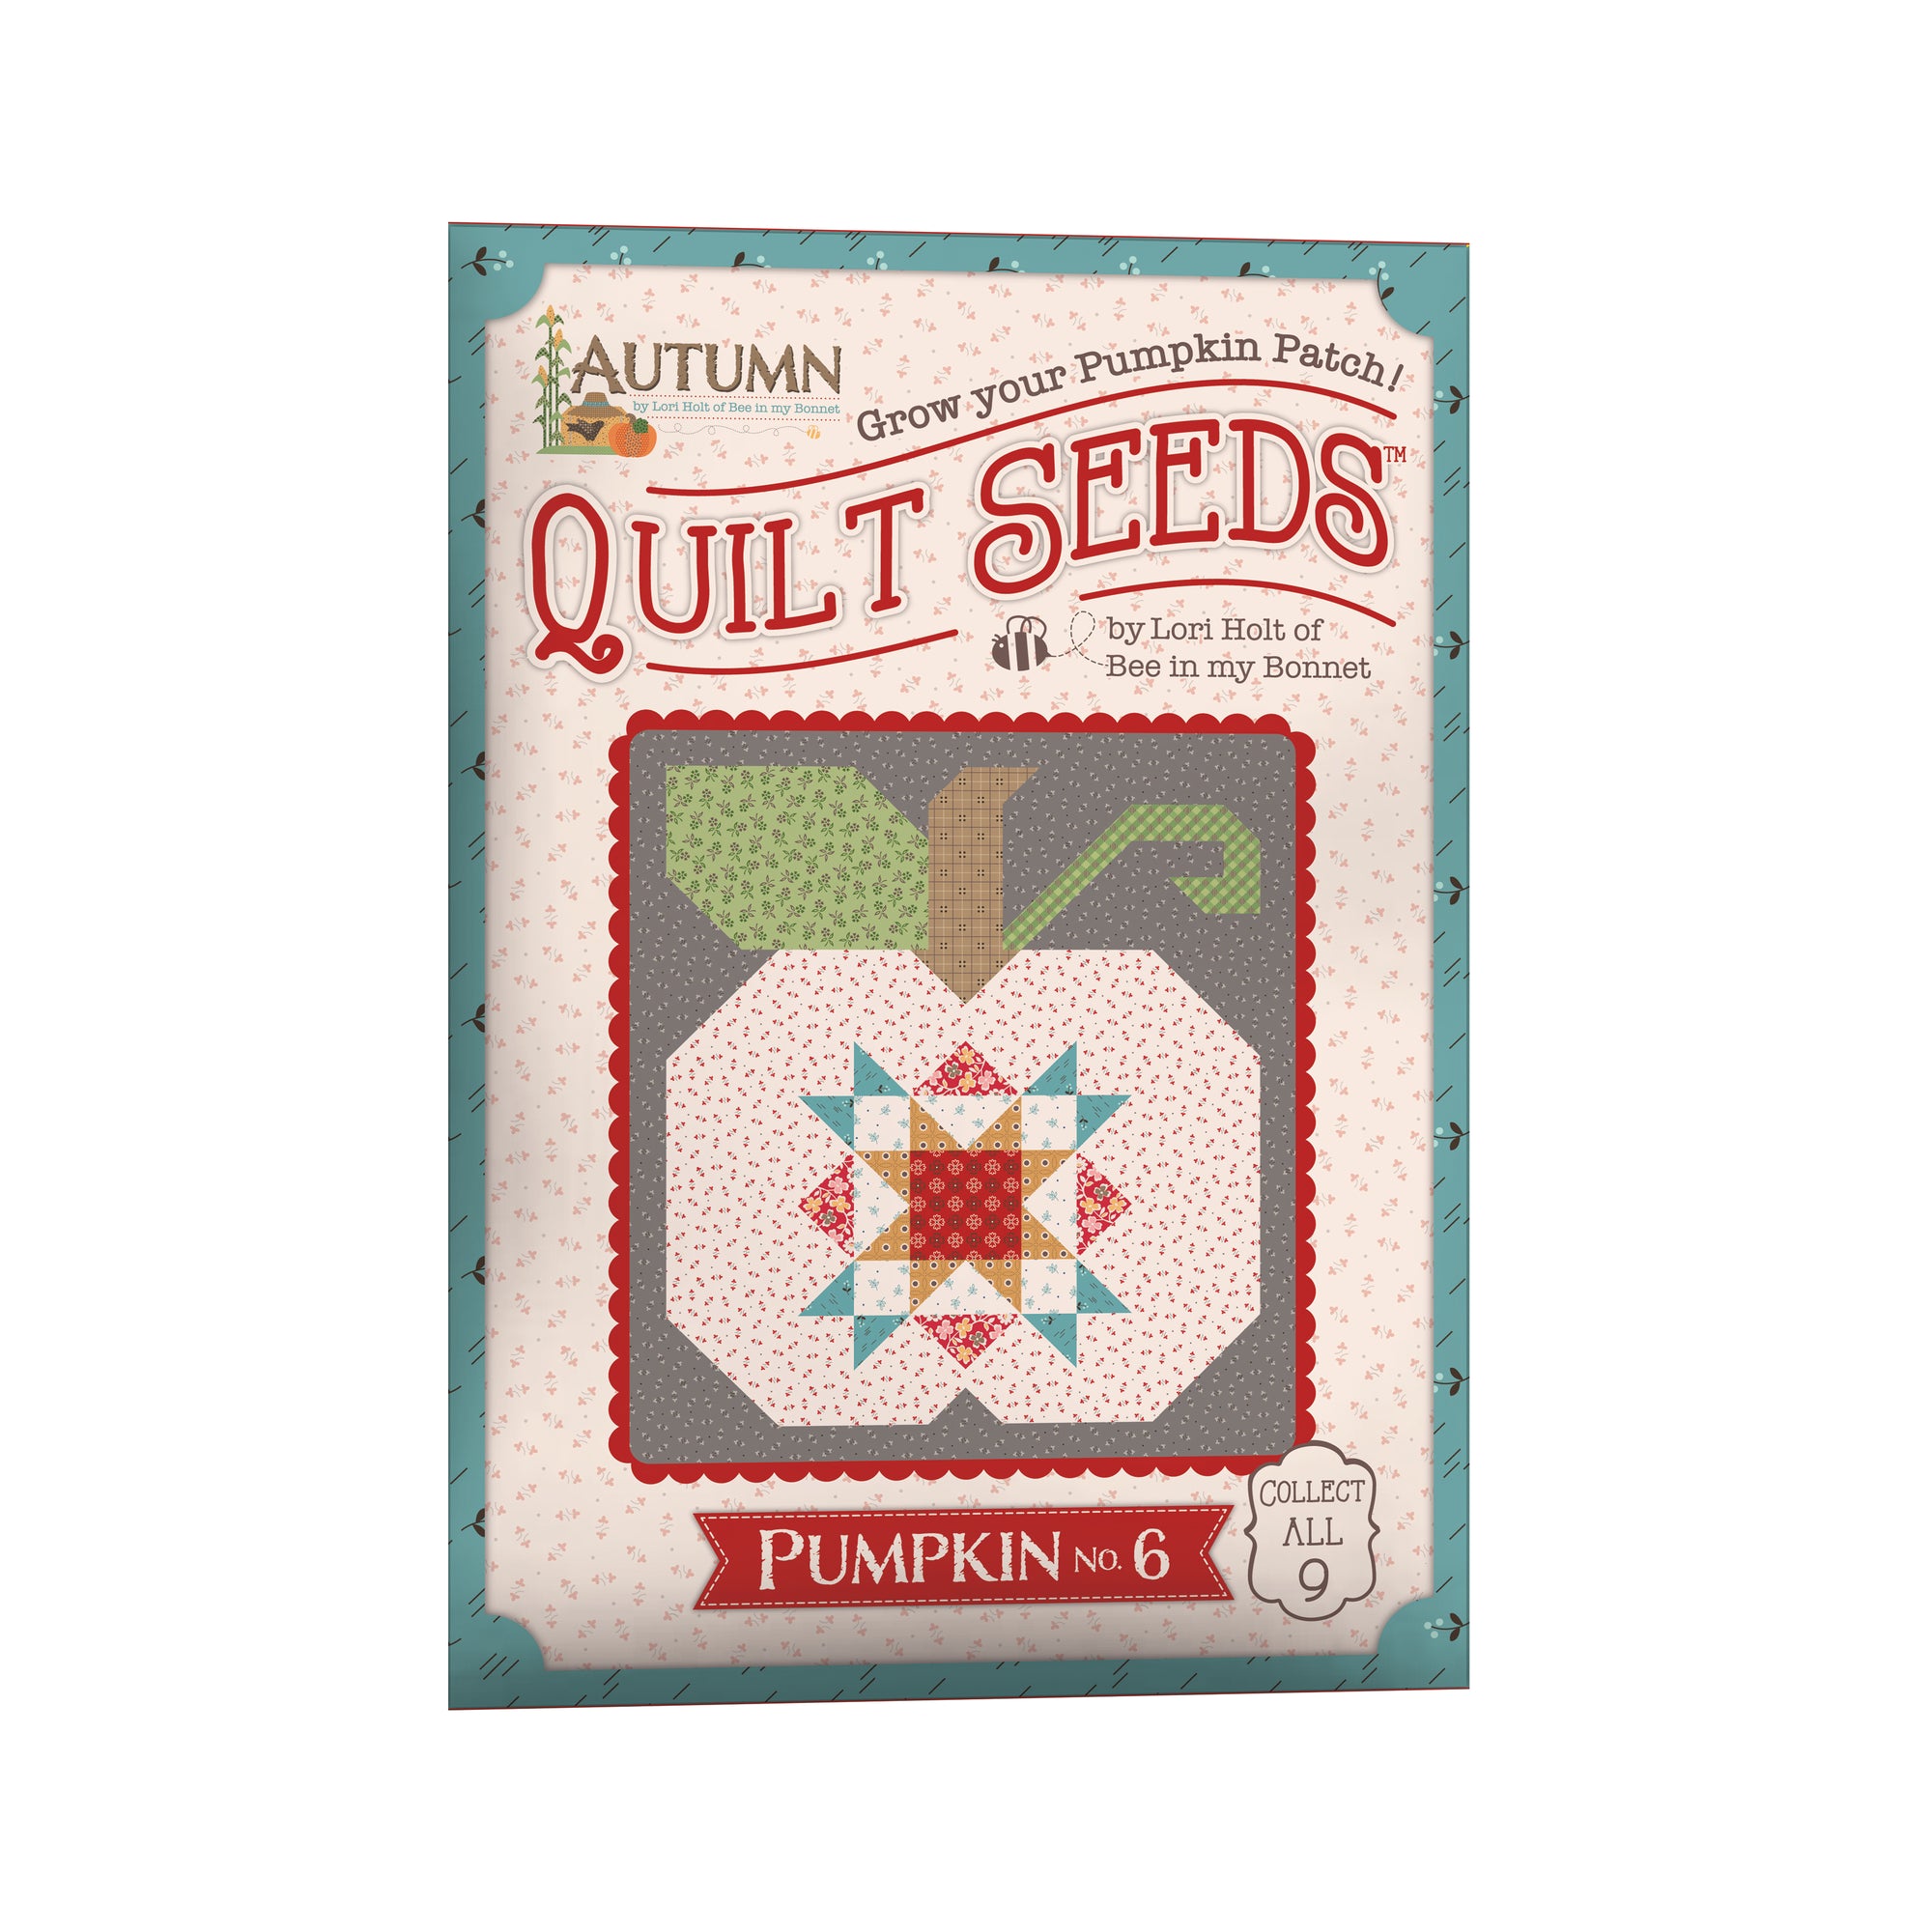 Lori Holt Autumn Quilt Seeds™ Pattern Pumpkin No 6